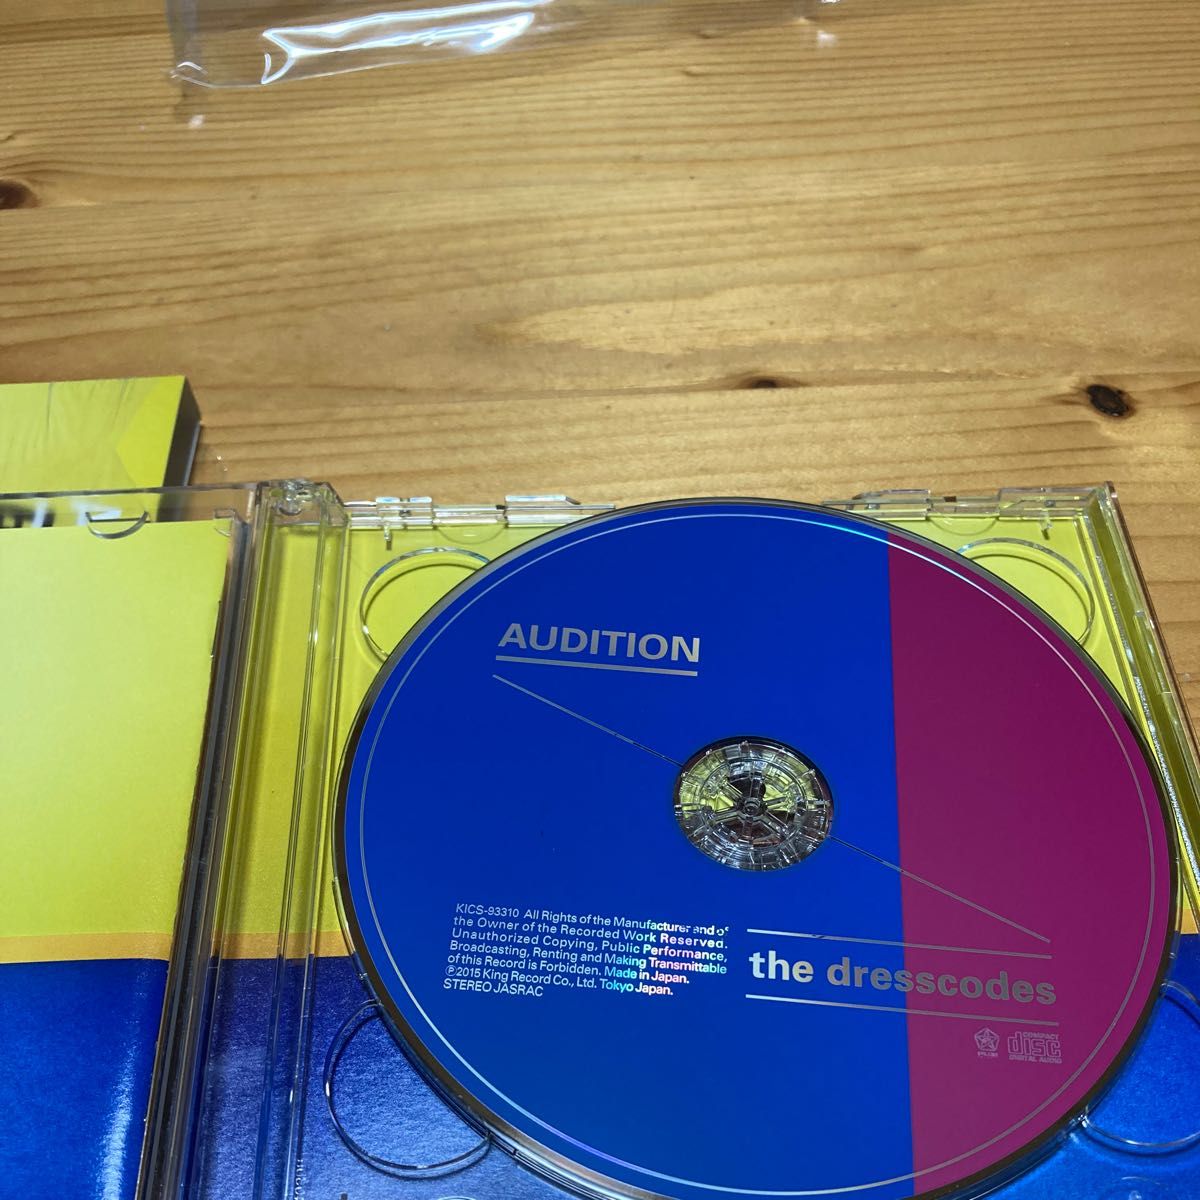 [国内盤CD] the dresscodes/AUDITION [CD+DVD] [2枚組] [初回出荷限定盤 (初回限定盤)]